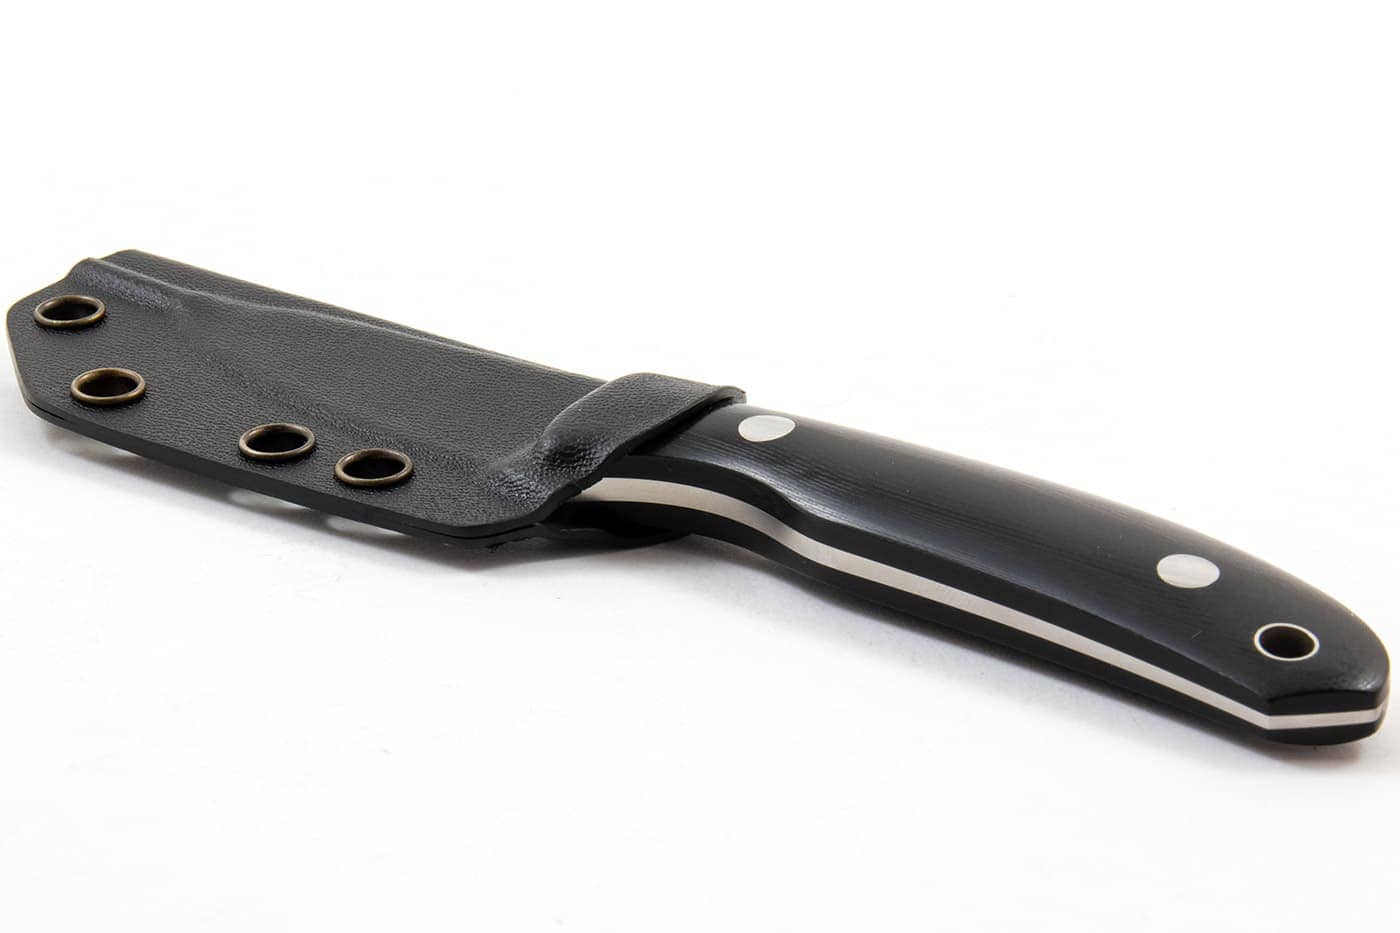 Casstrom Safari Alan Wood Mini Hunter Knife Black G10 Kydex